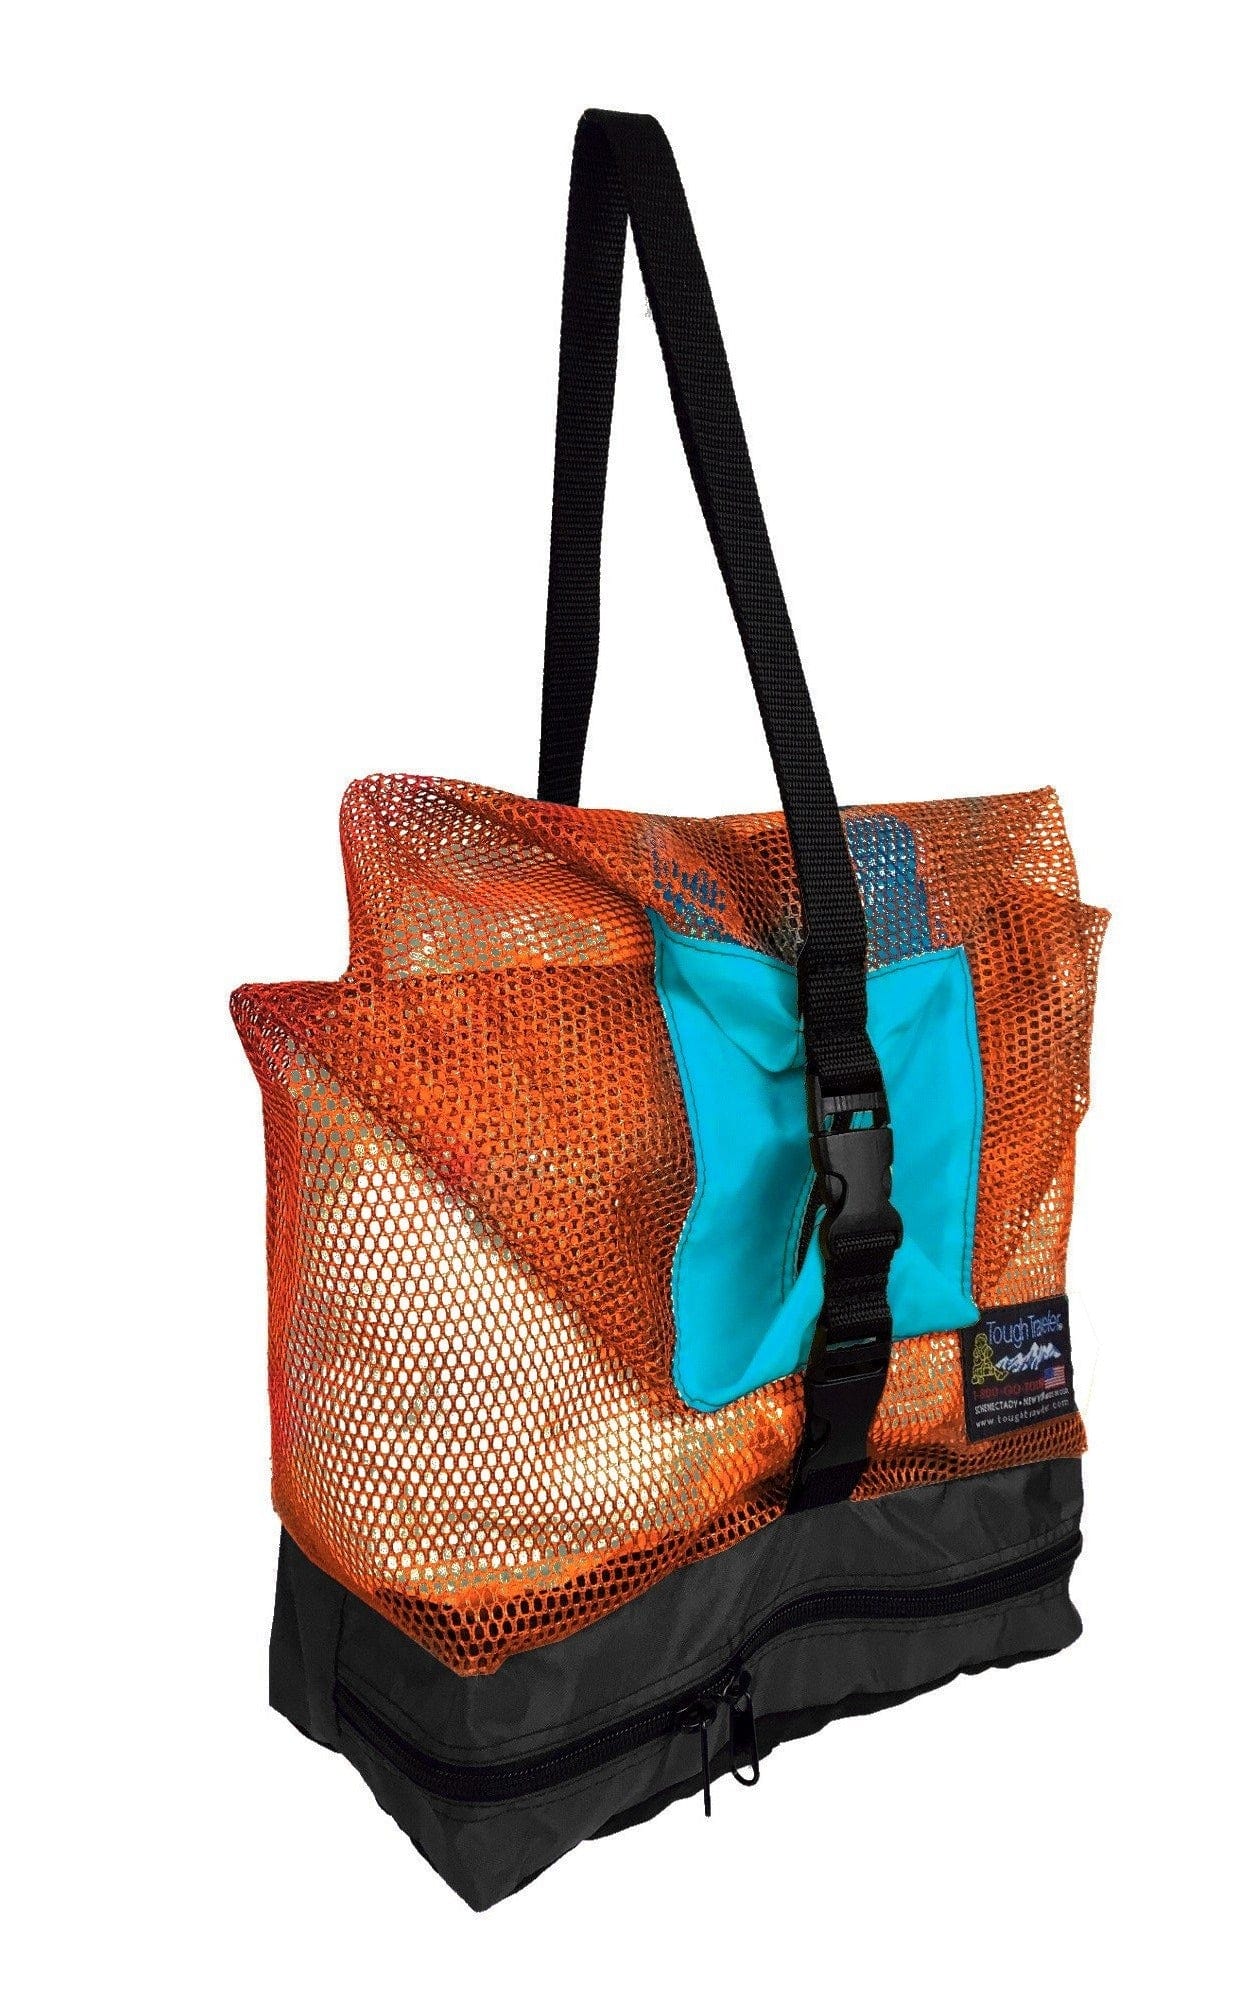 Navy Printed Resort Bag | Tote Handbag | Beach Bag